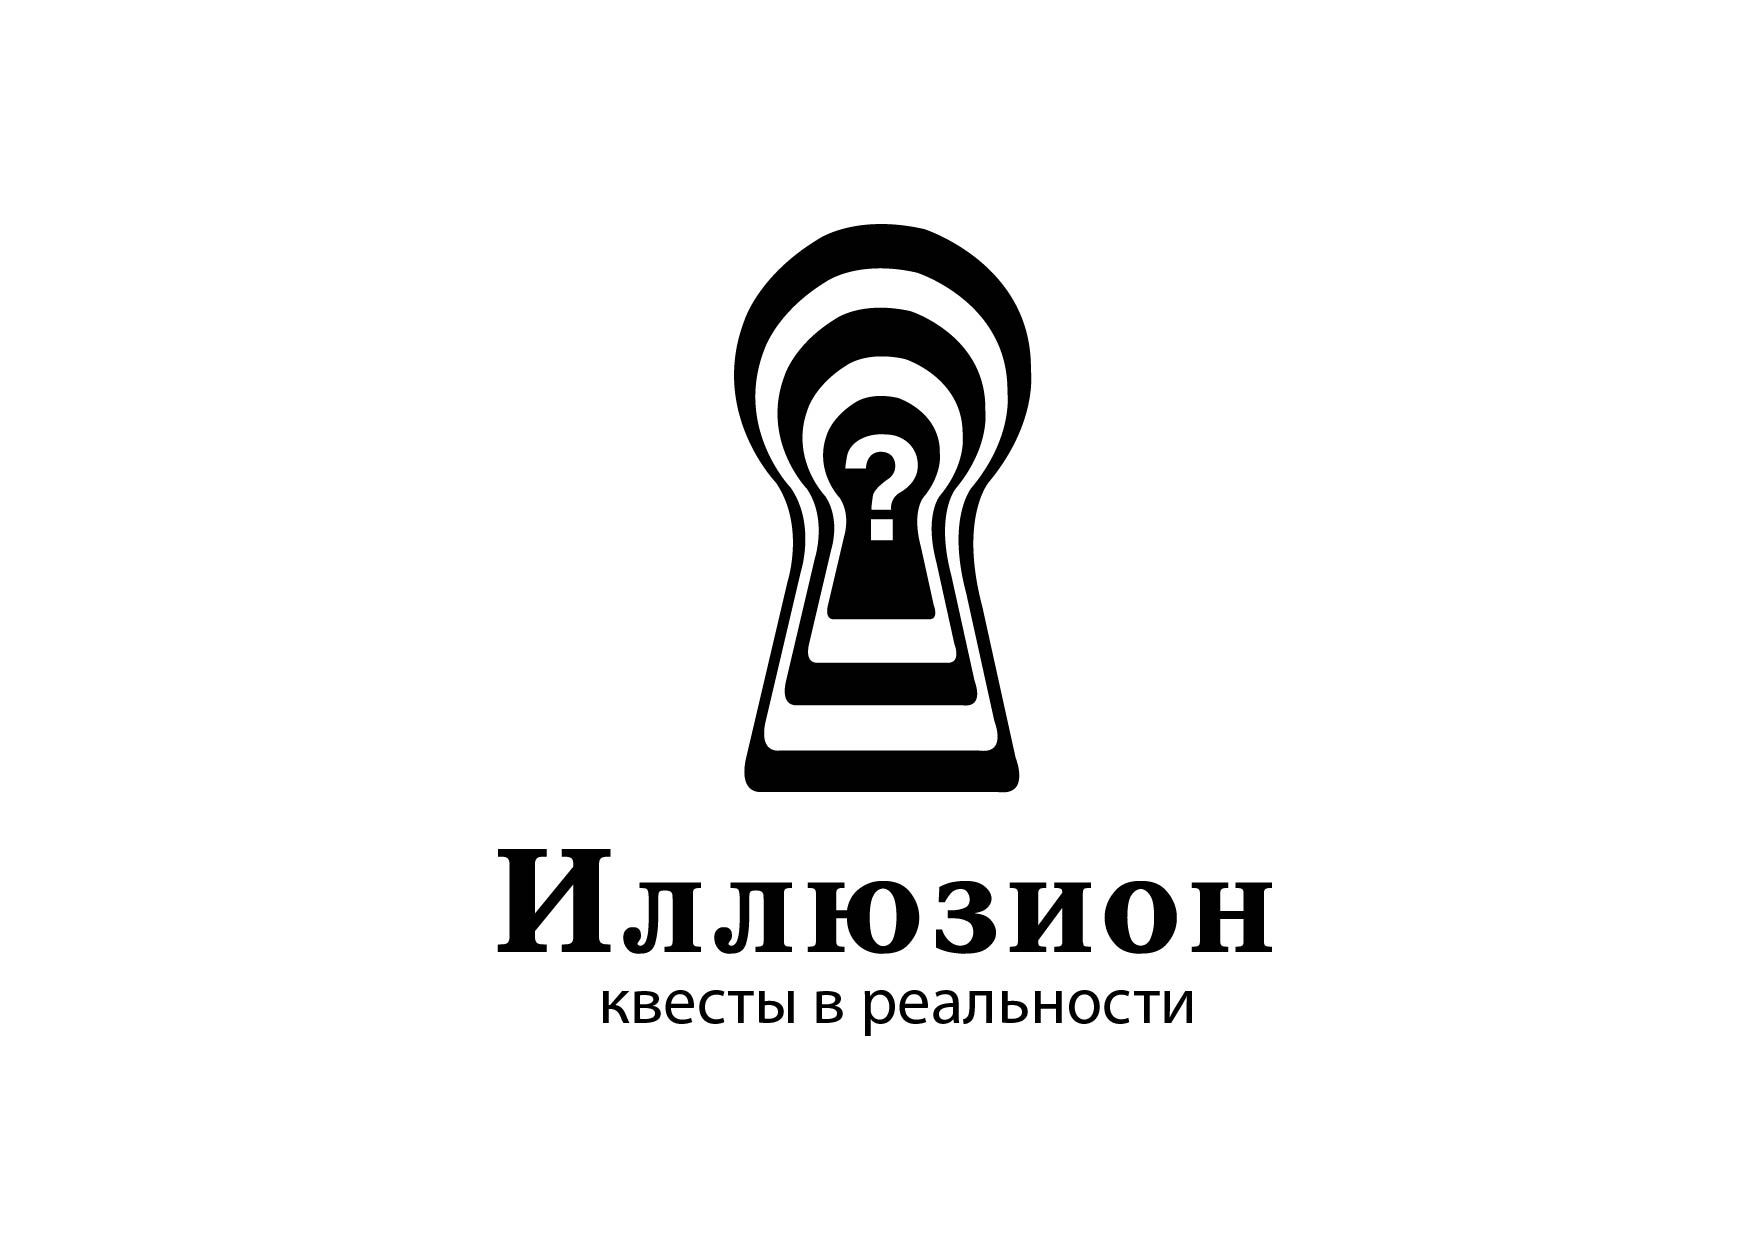 Логотип для Квесты в реальности 